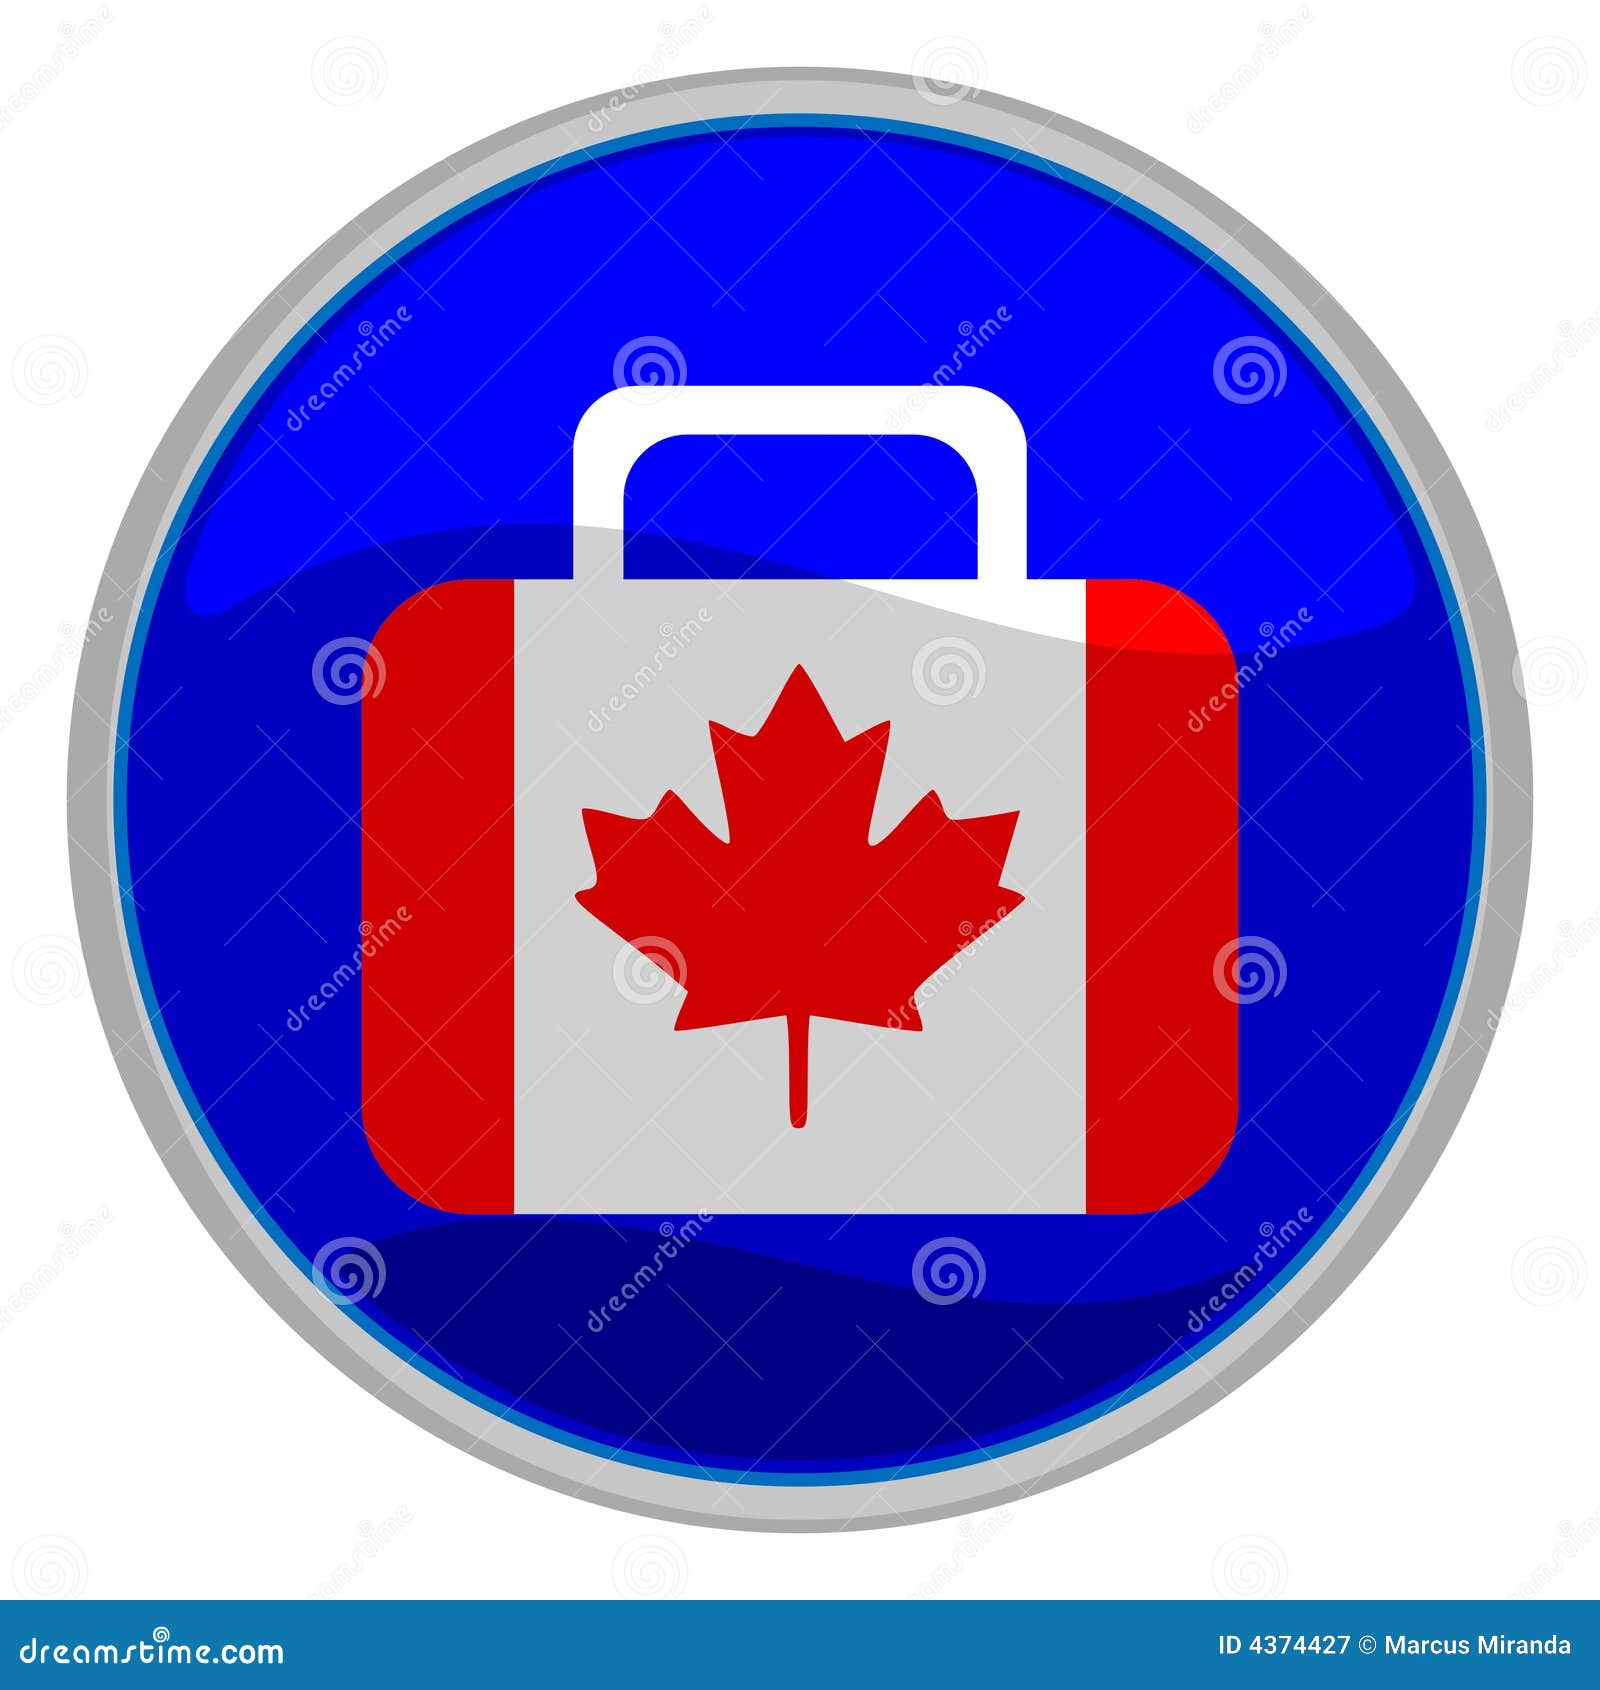 Graphisme de valise d'indicateur du Canada. Dirigez l'illustration d'un graphisme lustré d'une valise sous forme d'indicateur canadien